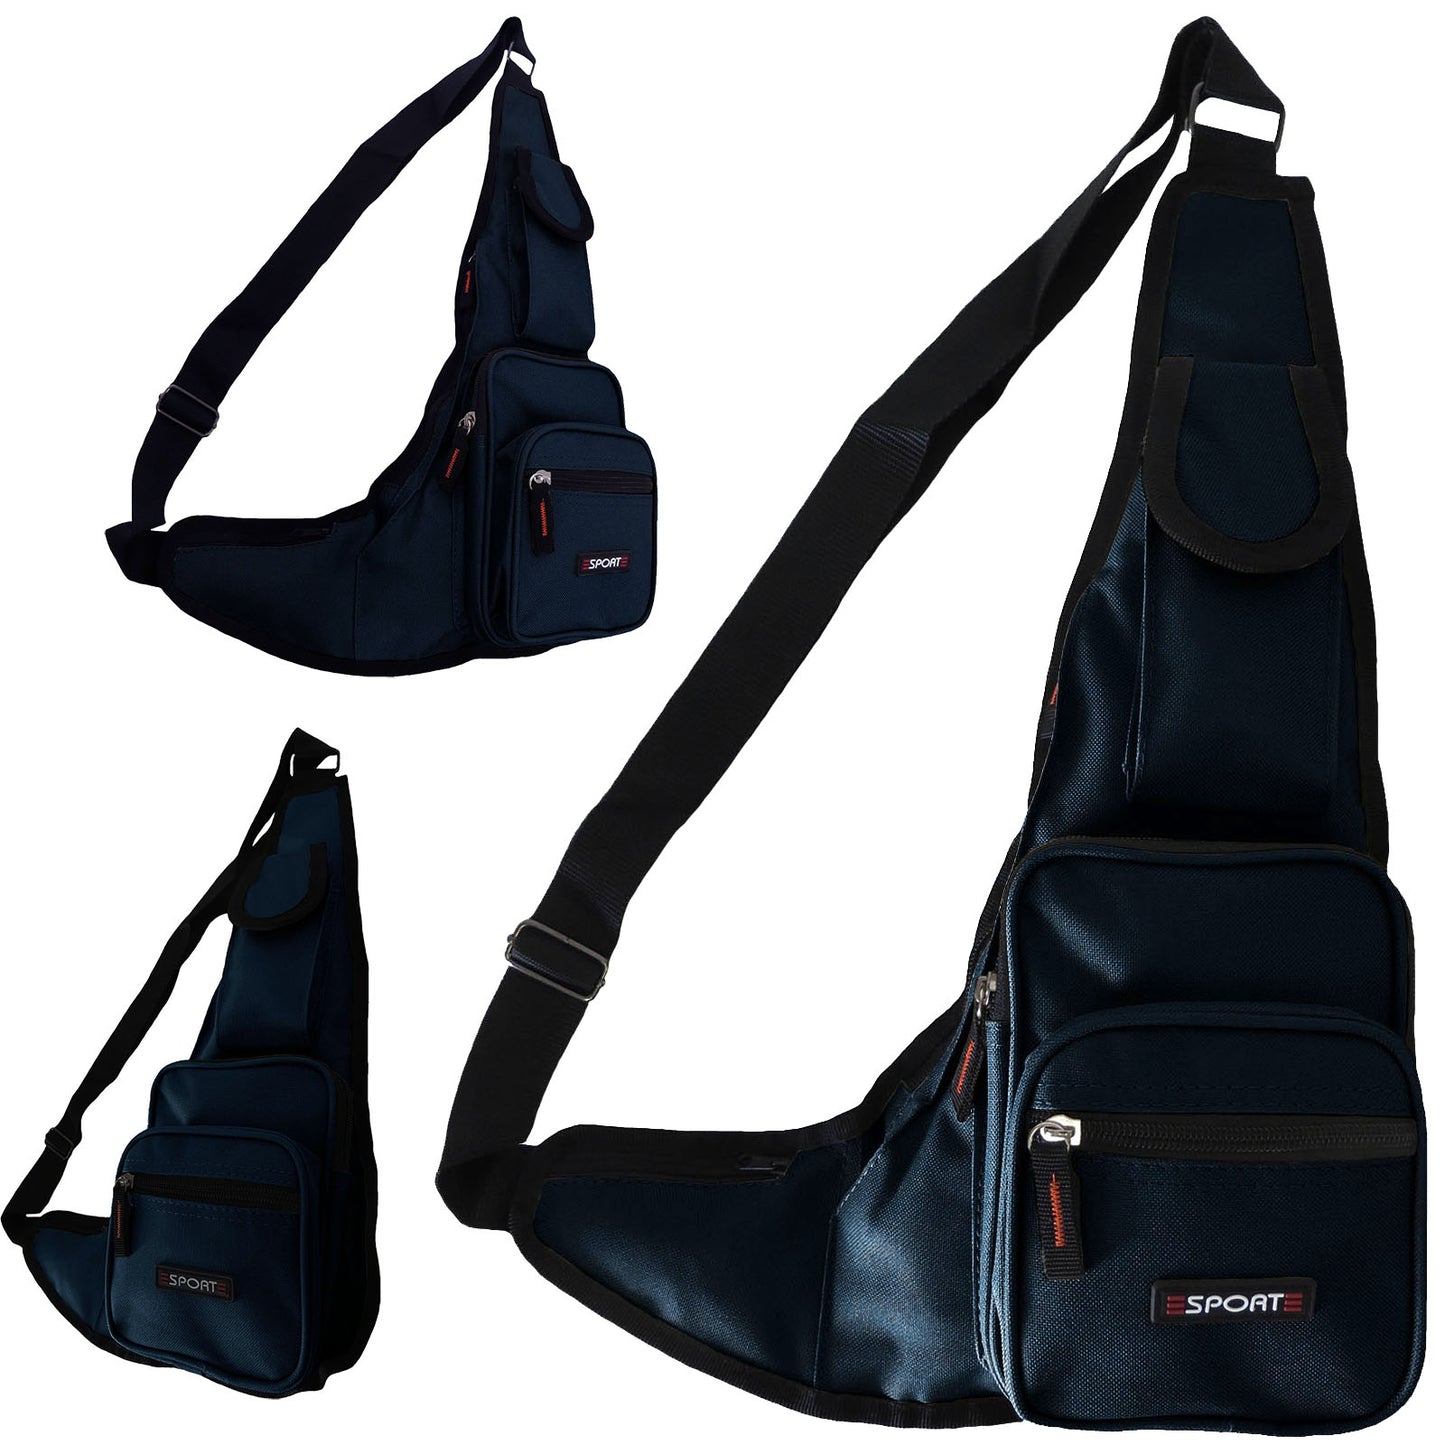 Wholesale Shoulder Sling Bag Messenger - Alessa Pat in Navy Blue